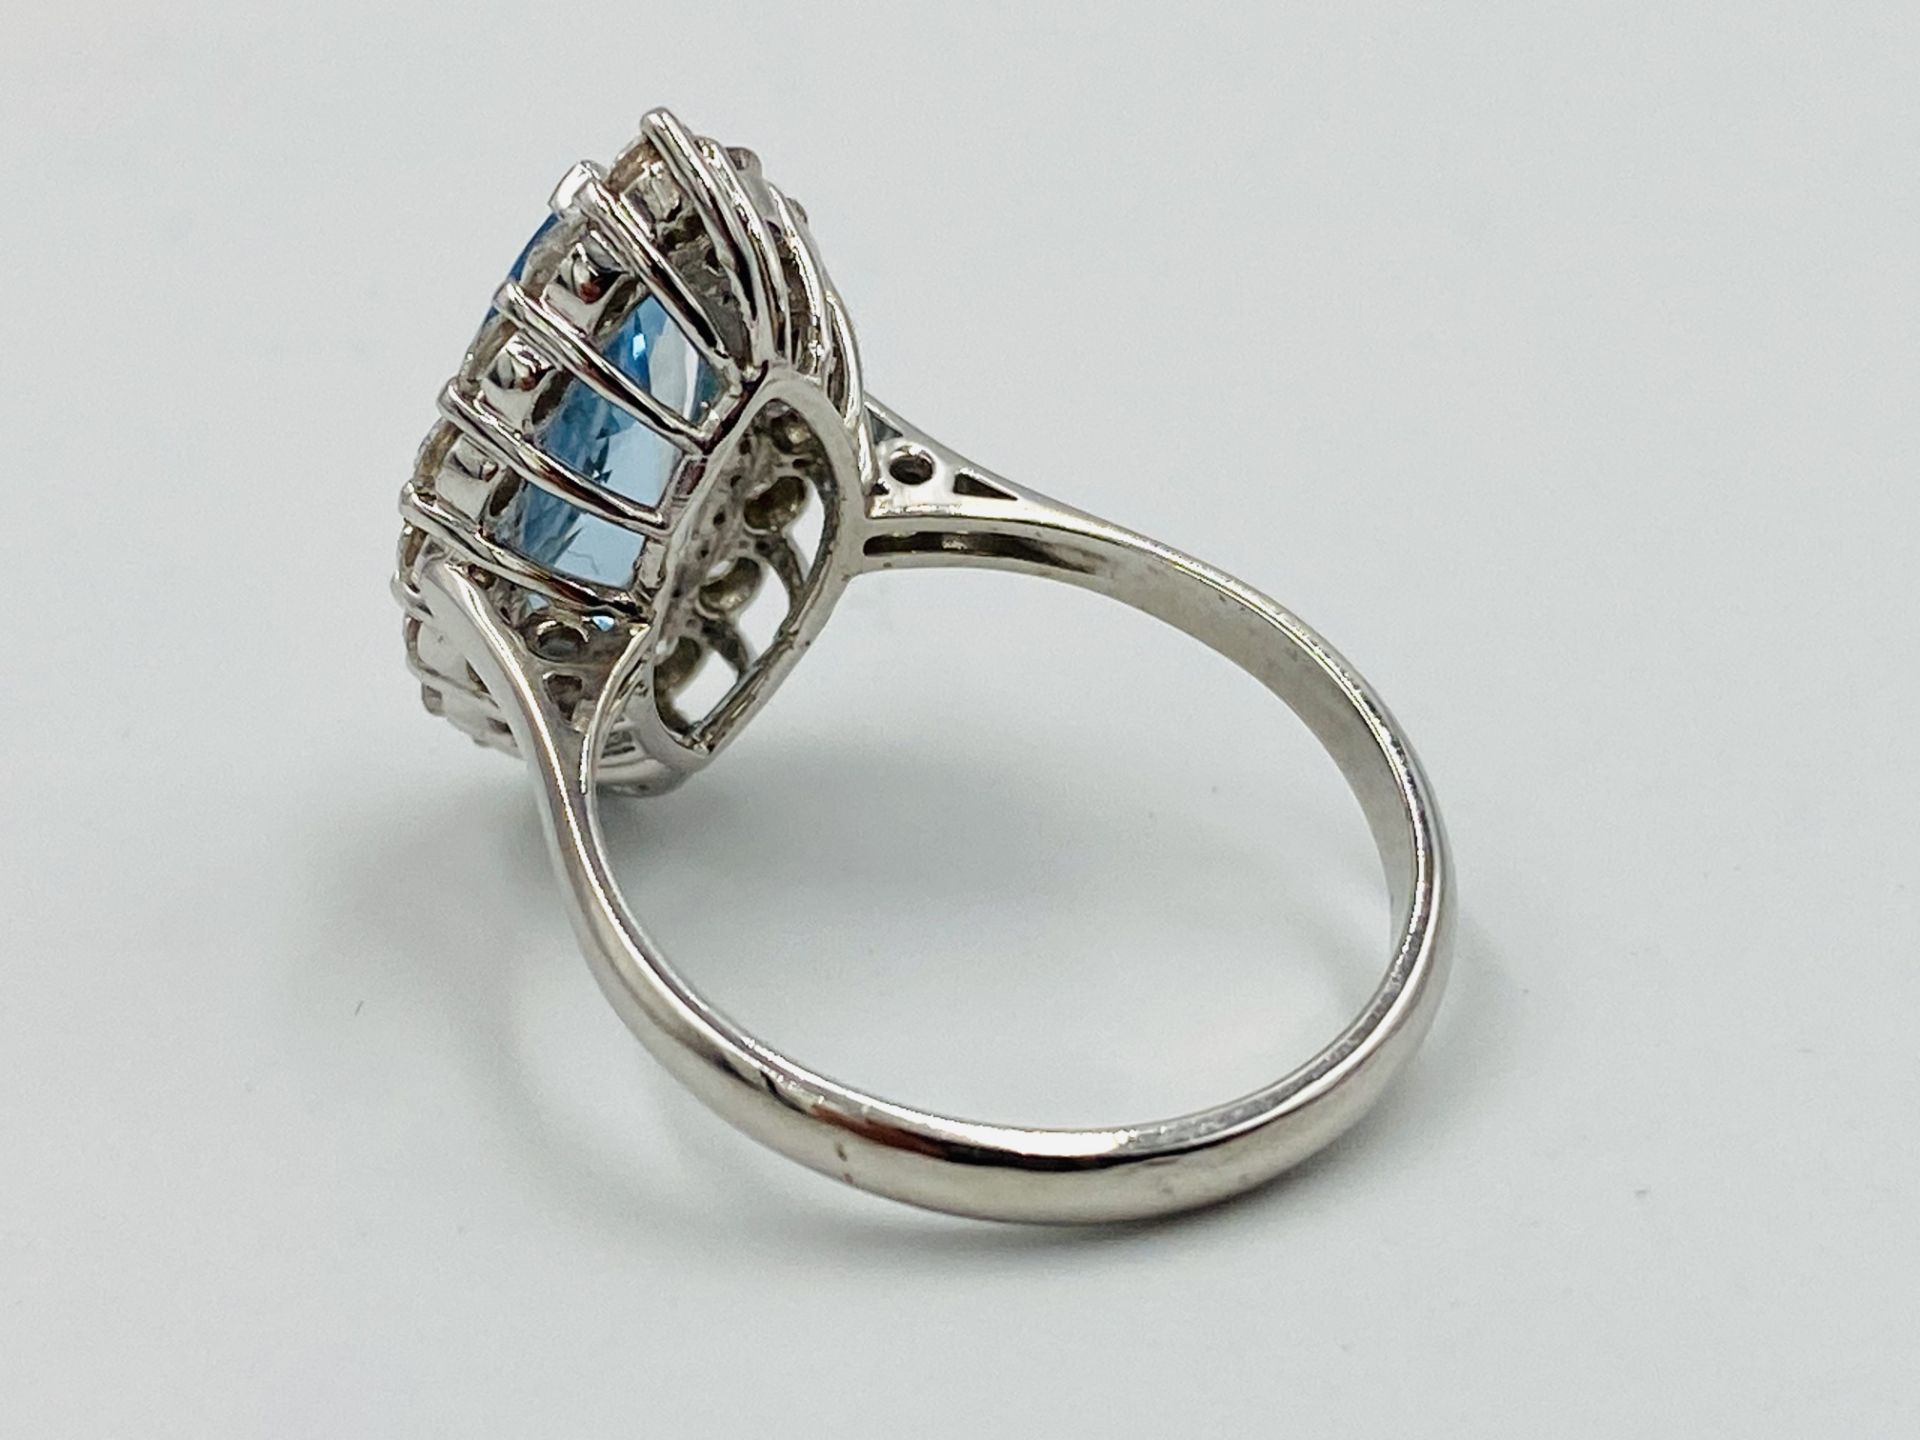 18ct white gold, aquamarine and diamond ring - Image 3 of 5